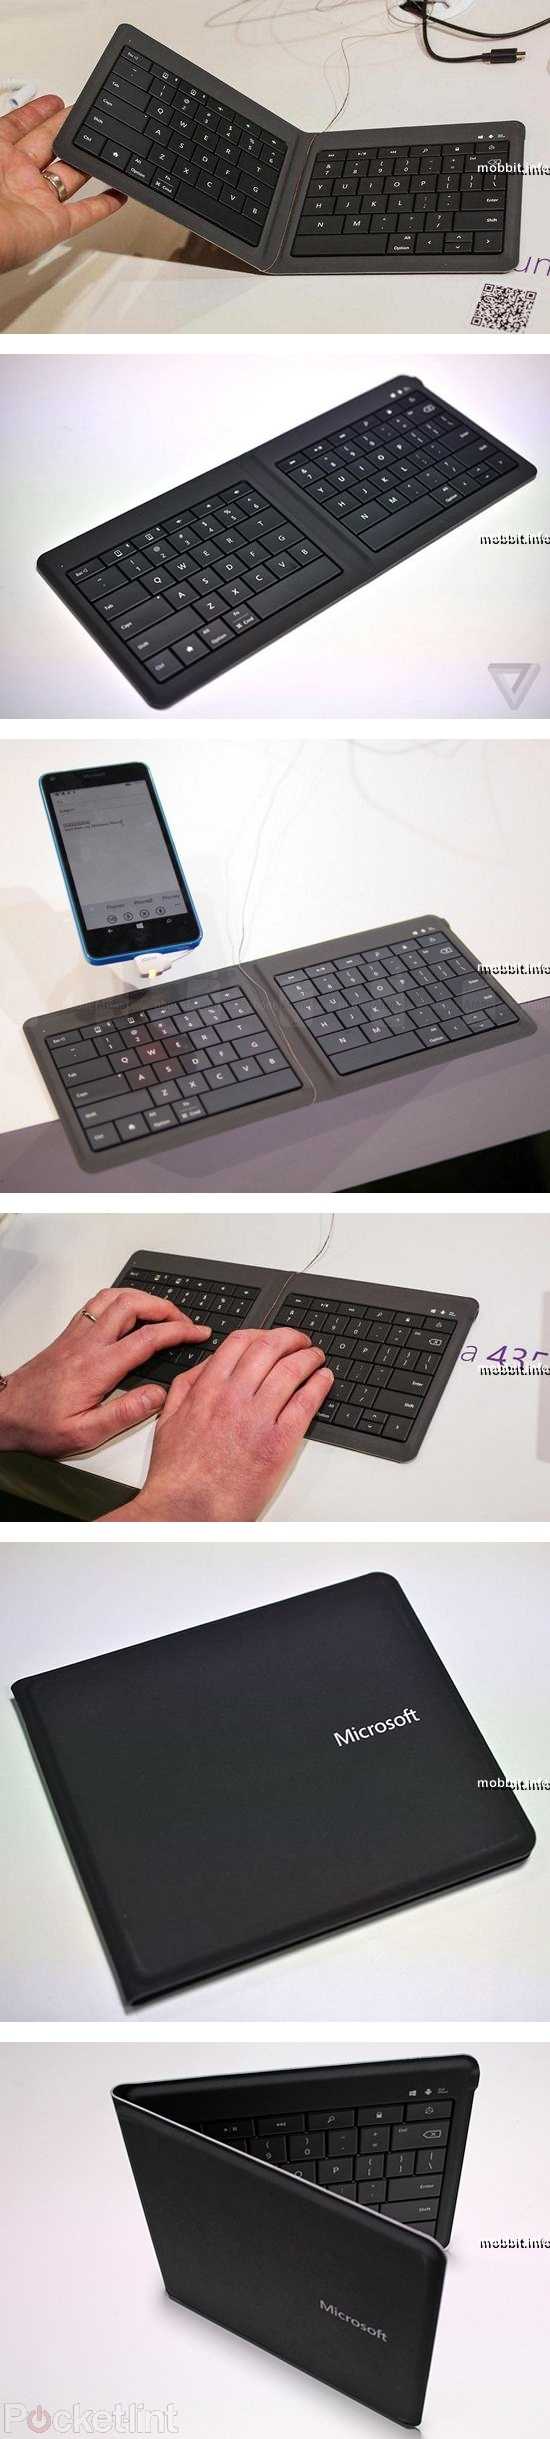 Microsoft предлагает приобрести складную водостойкую беспроводную клавиатуру universal foldable keyboard - компьютерный ресурс у sm